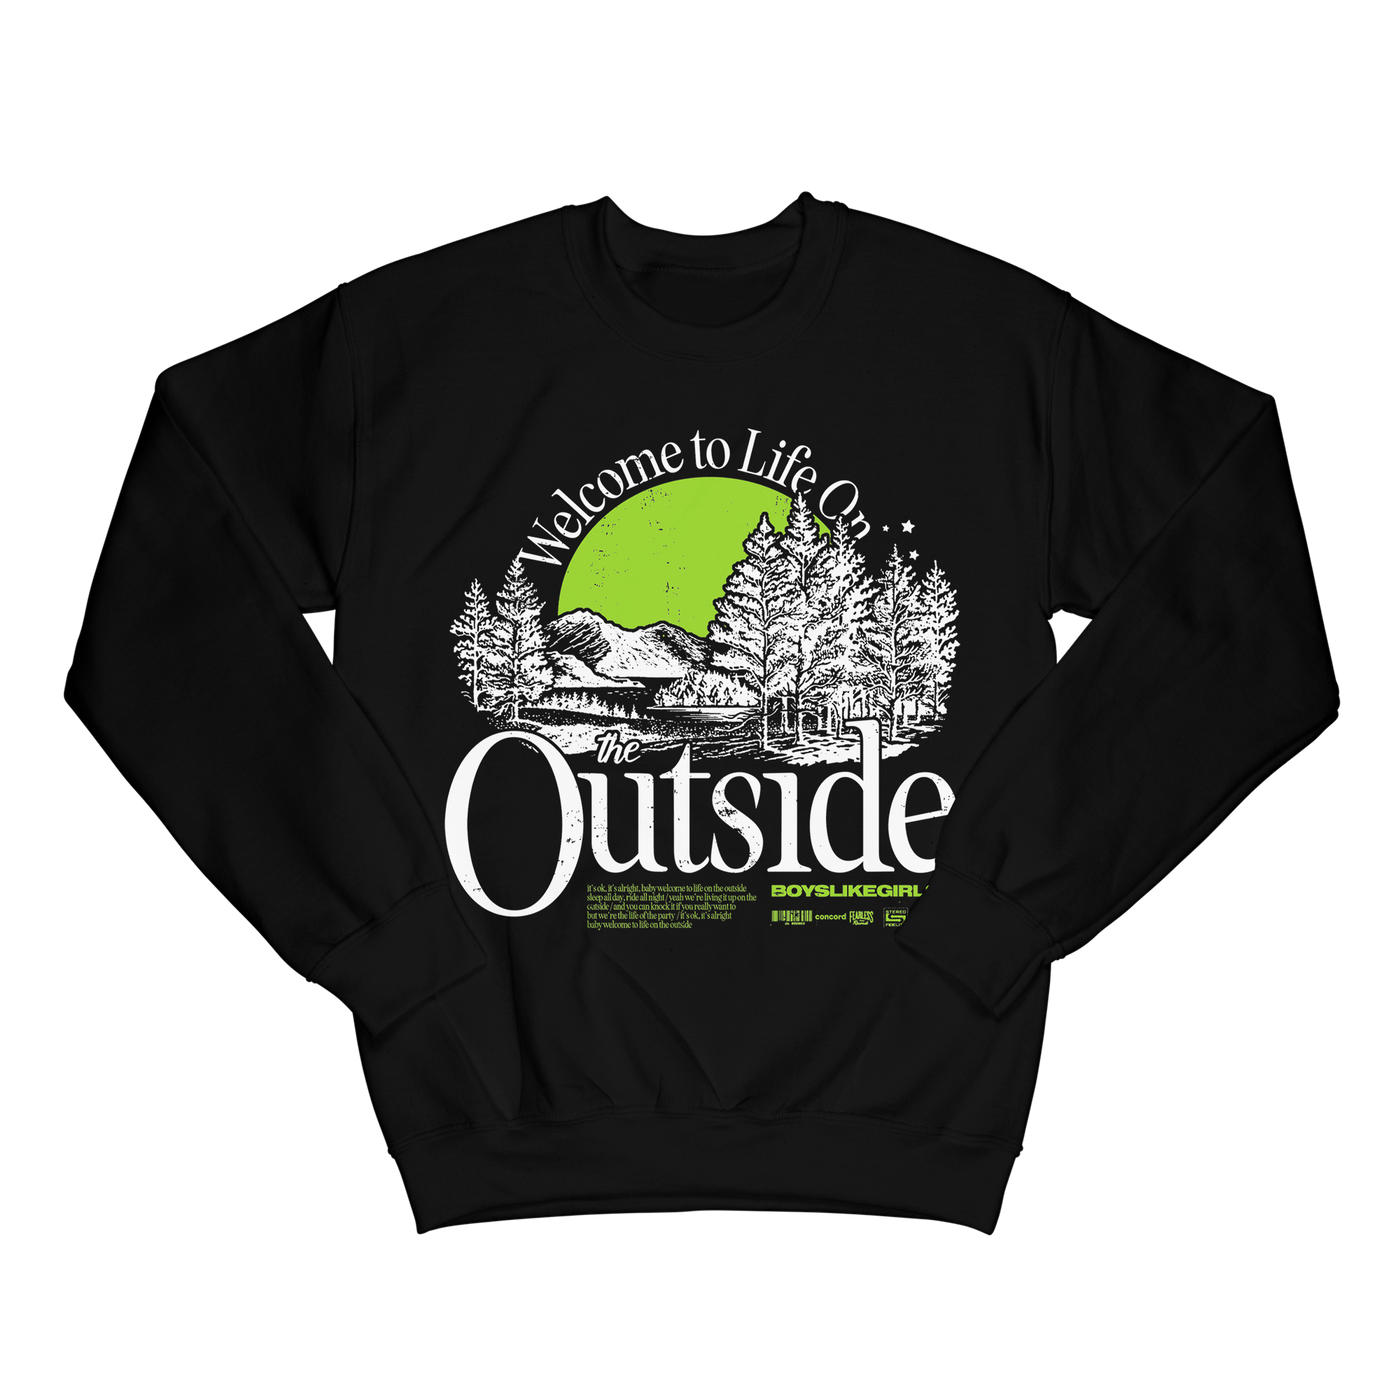 "THE OUTSIDE" Black Crewneck Sweatshirt